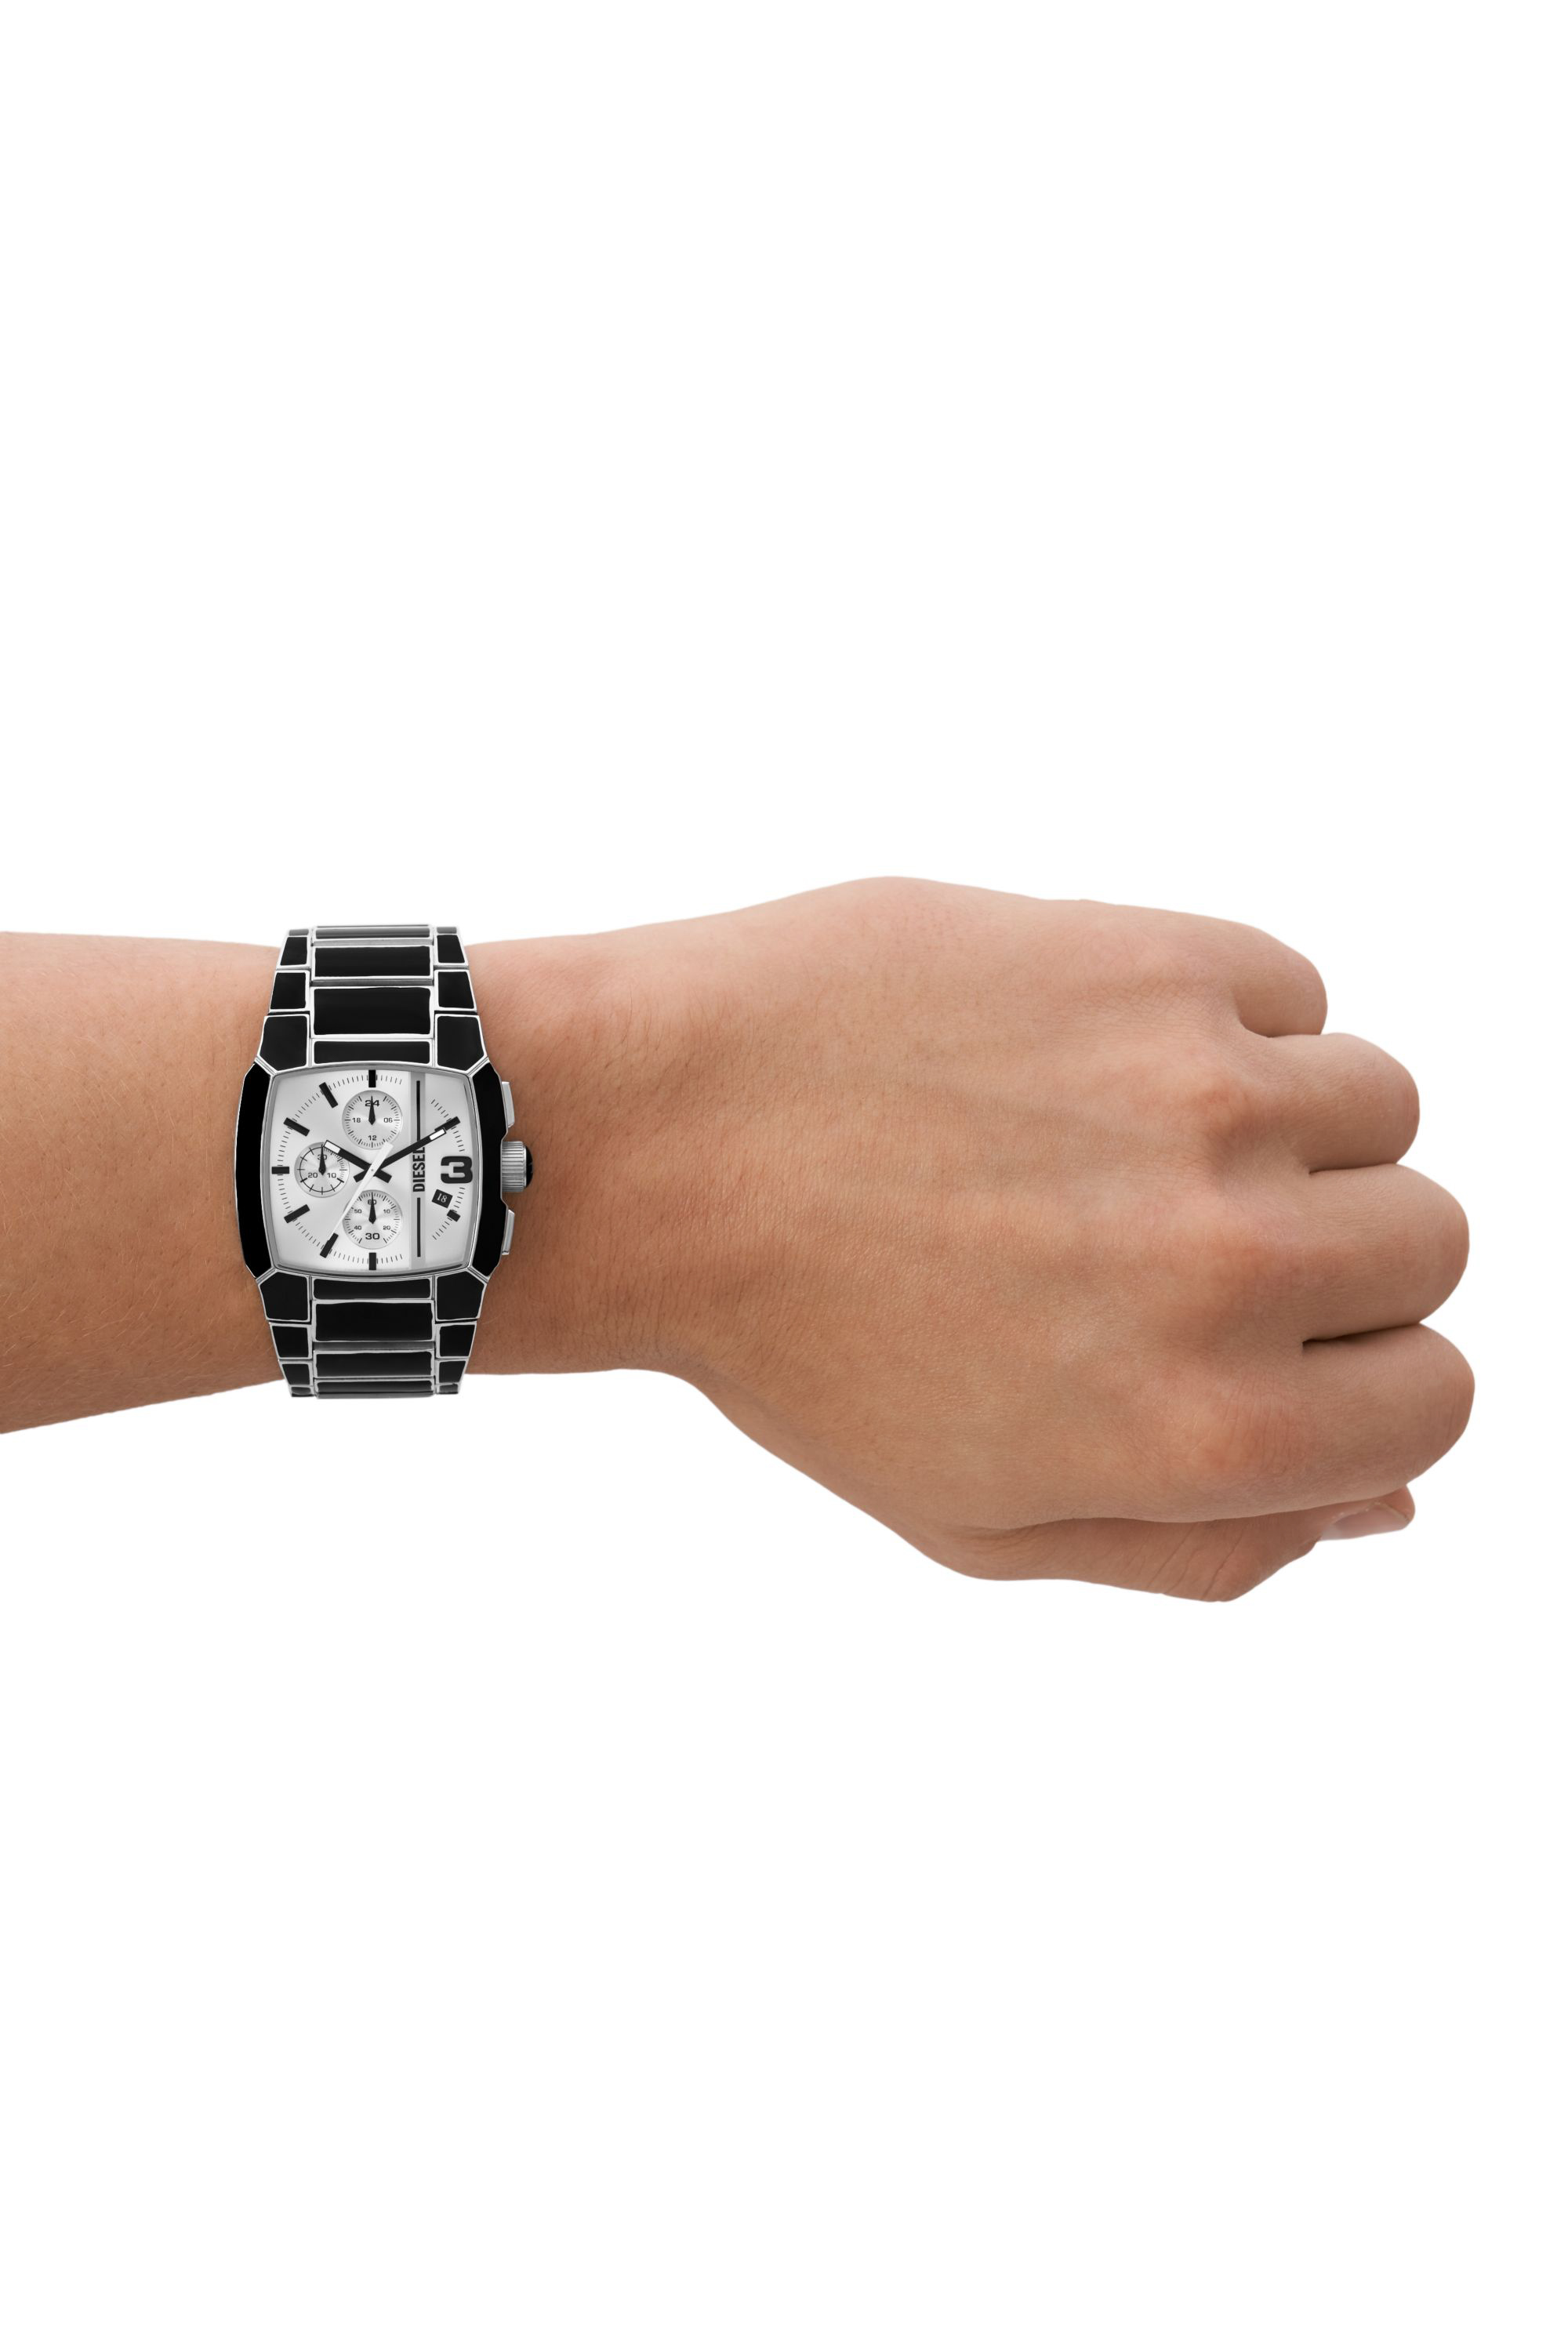 Diesel - DZ4646, Man Cliffhanger black enamel and stainless steel watch in Black - Image 4